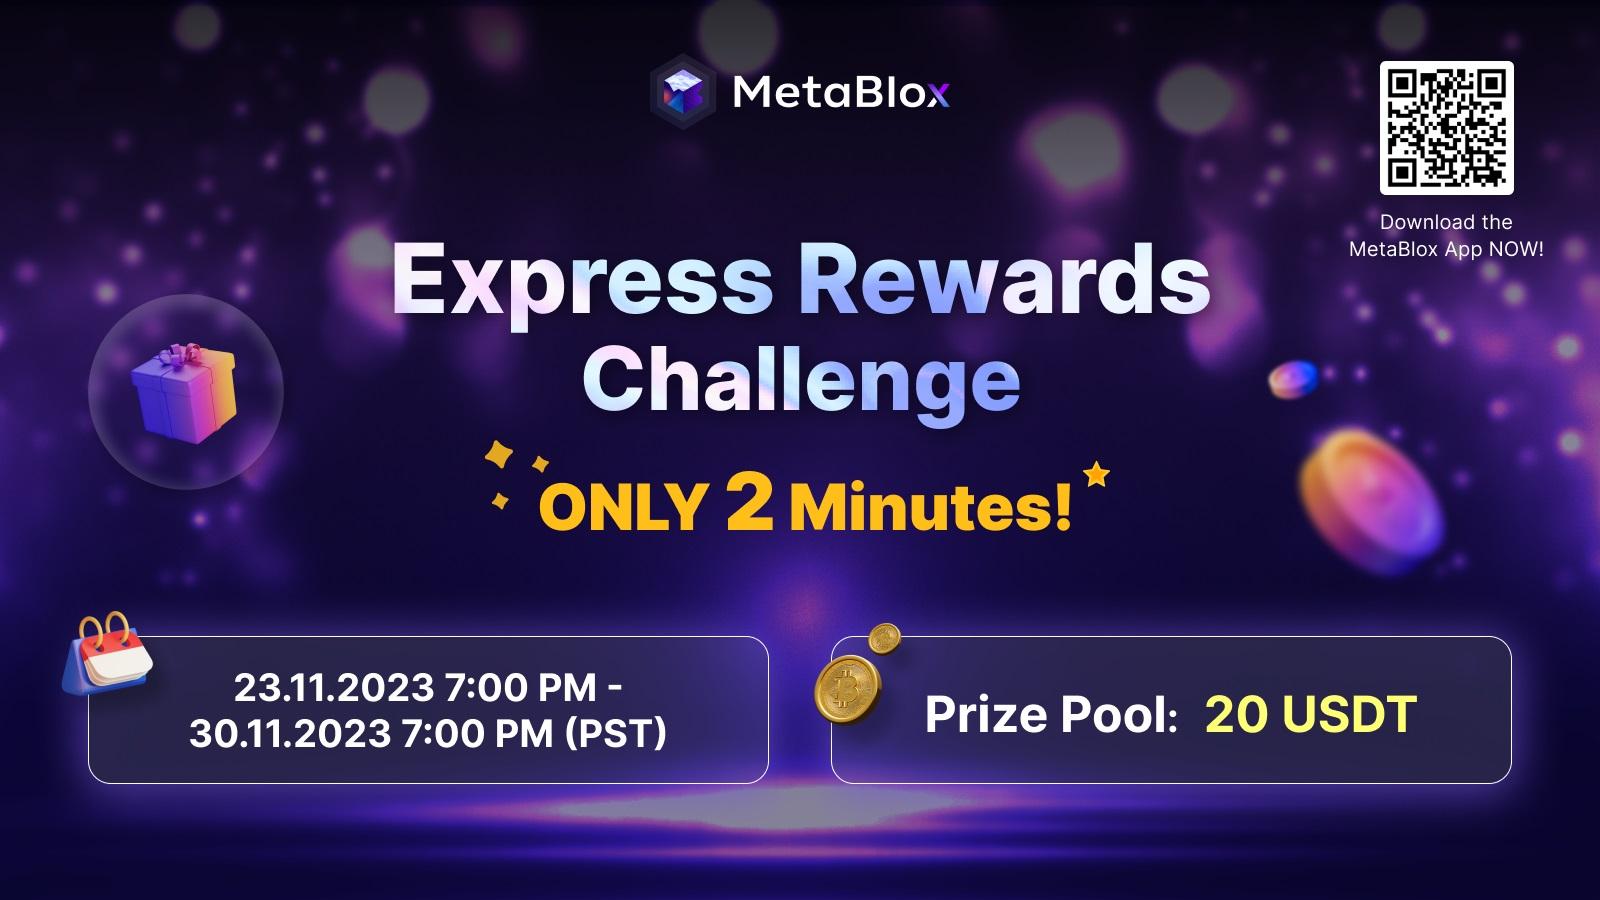 2-Minute MetaBlox Express Rewards Challenge!